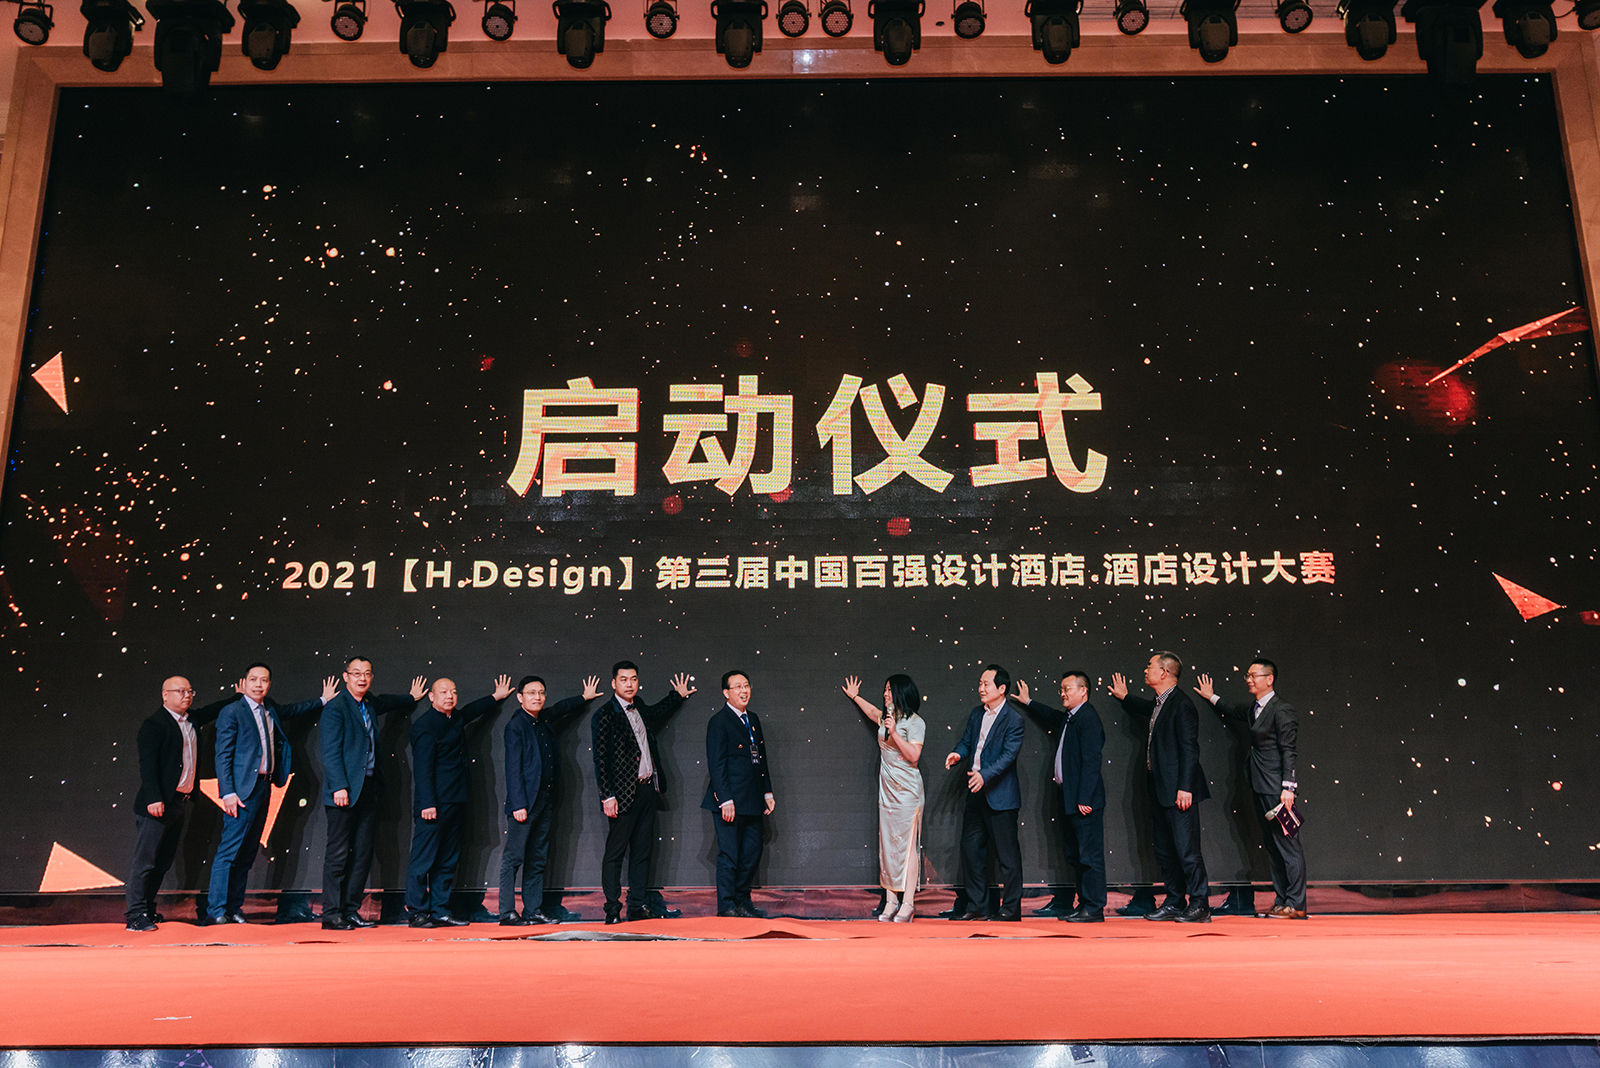 红专设计唐也受邀参加第六届中国西部亚娱体育业发展峰会